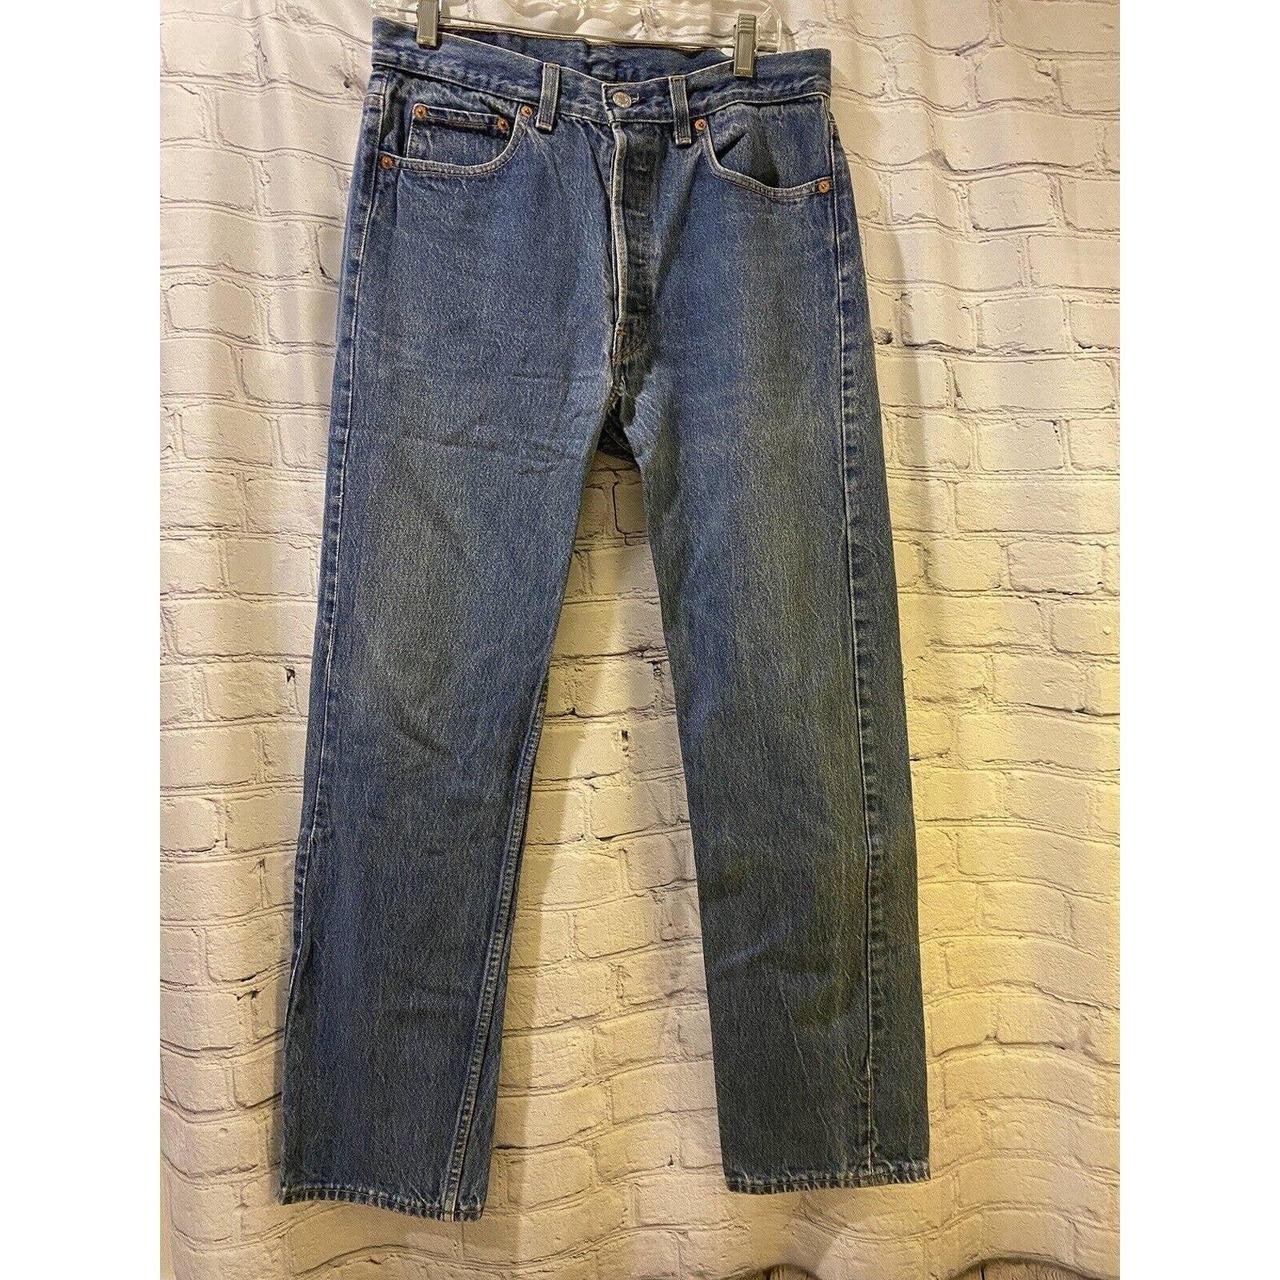 Vintage Levis 501 Denim Jeans 30 X 30 Made in USA... - Depop